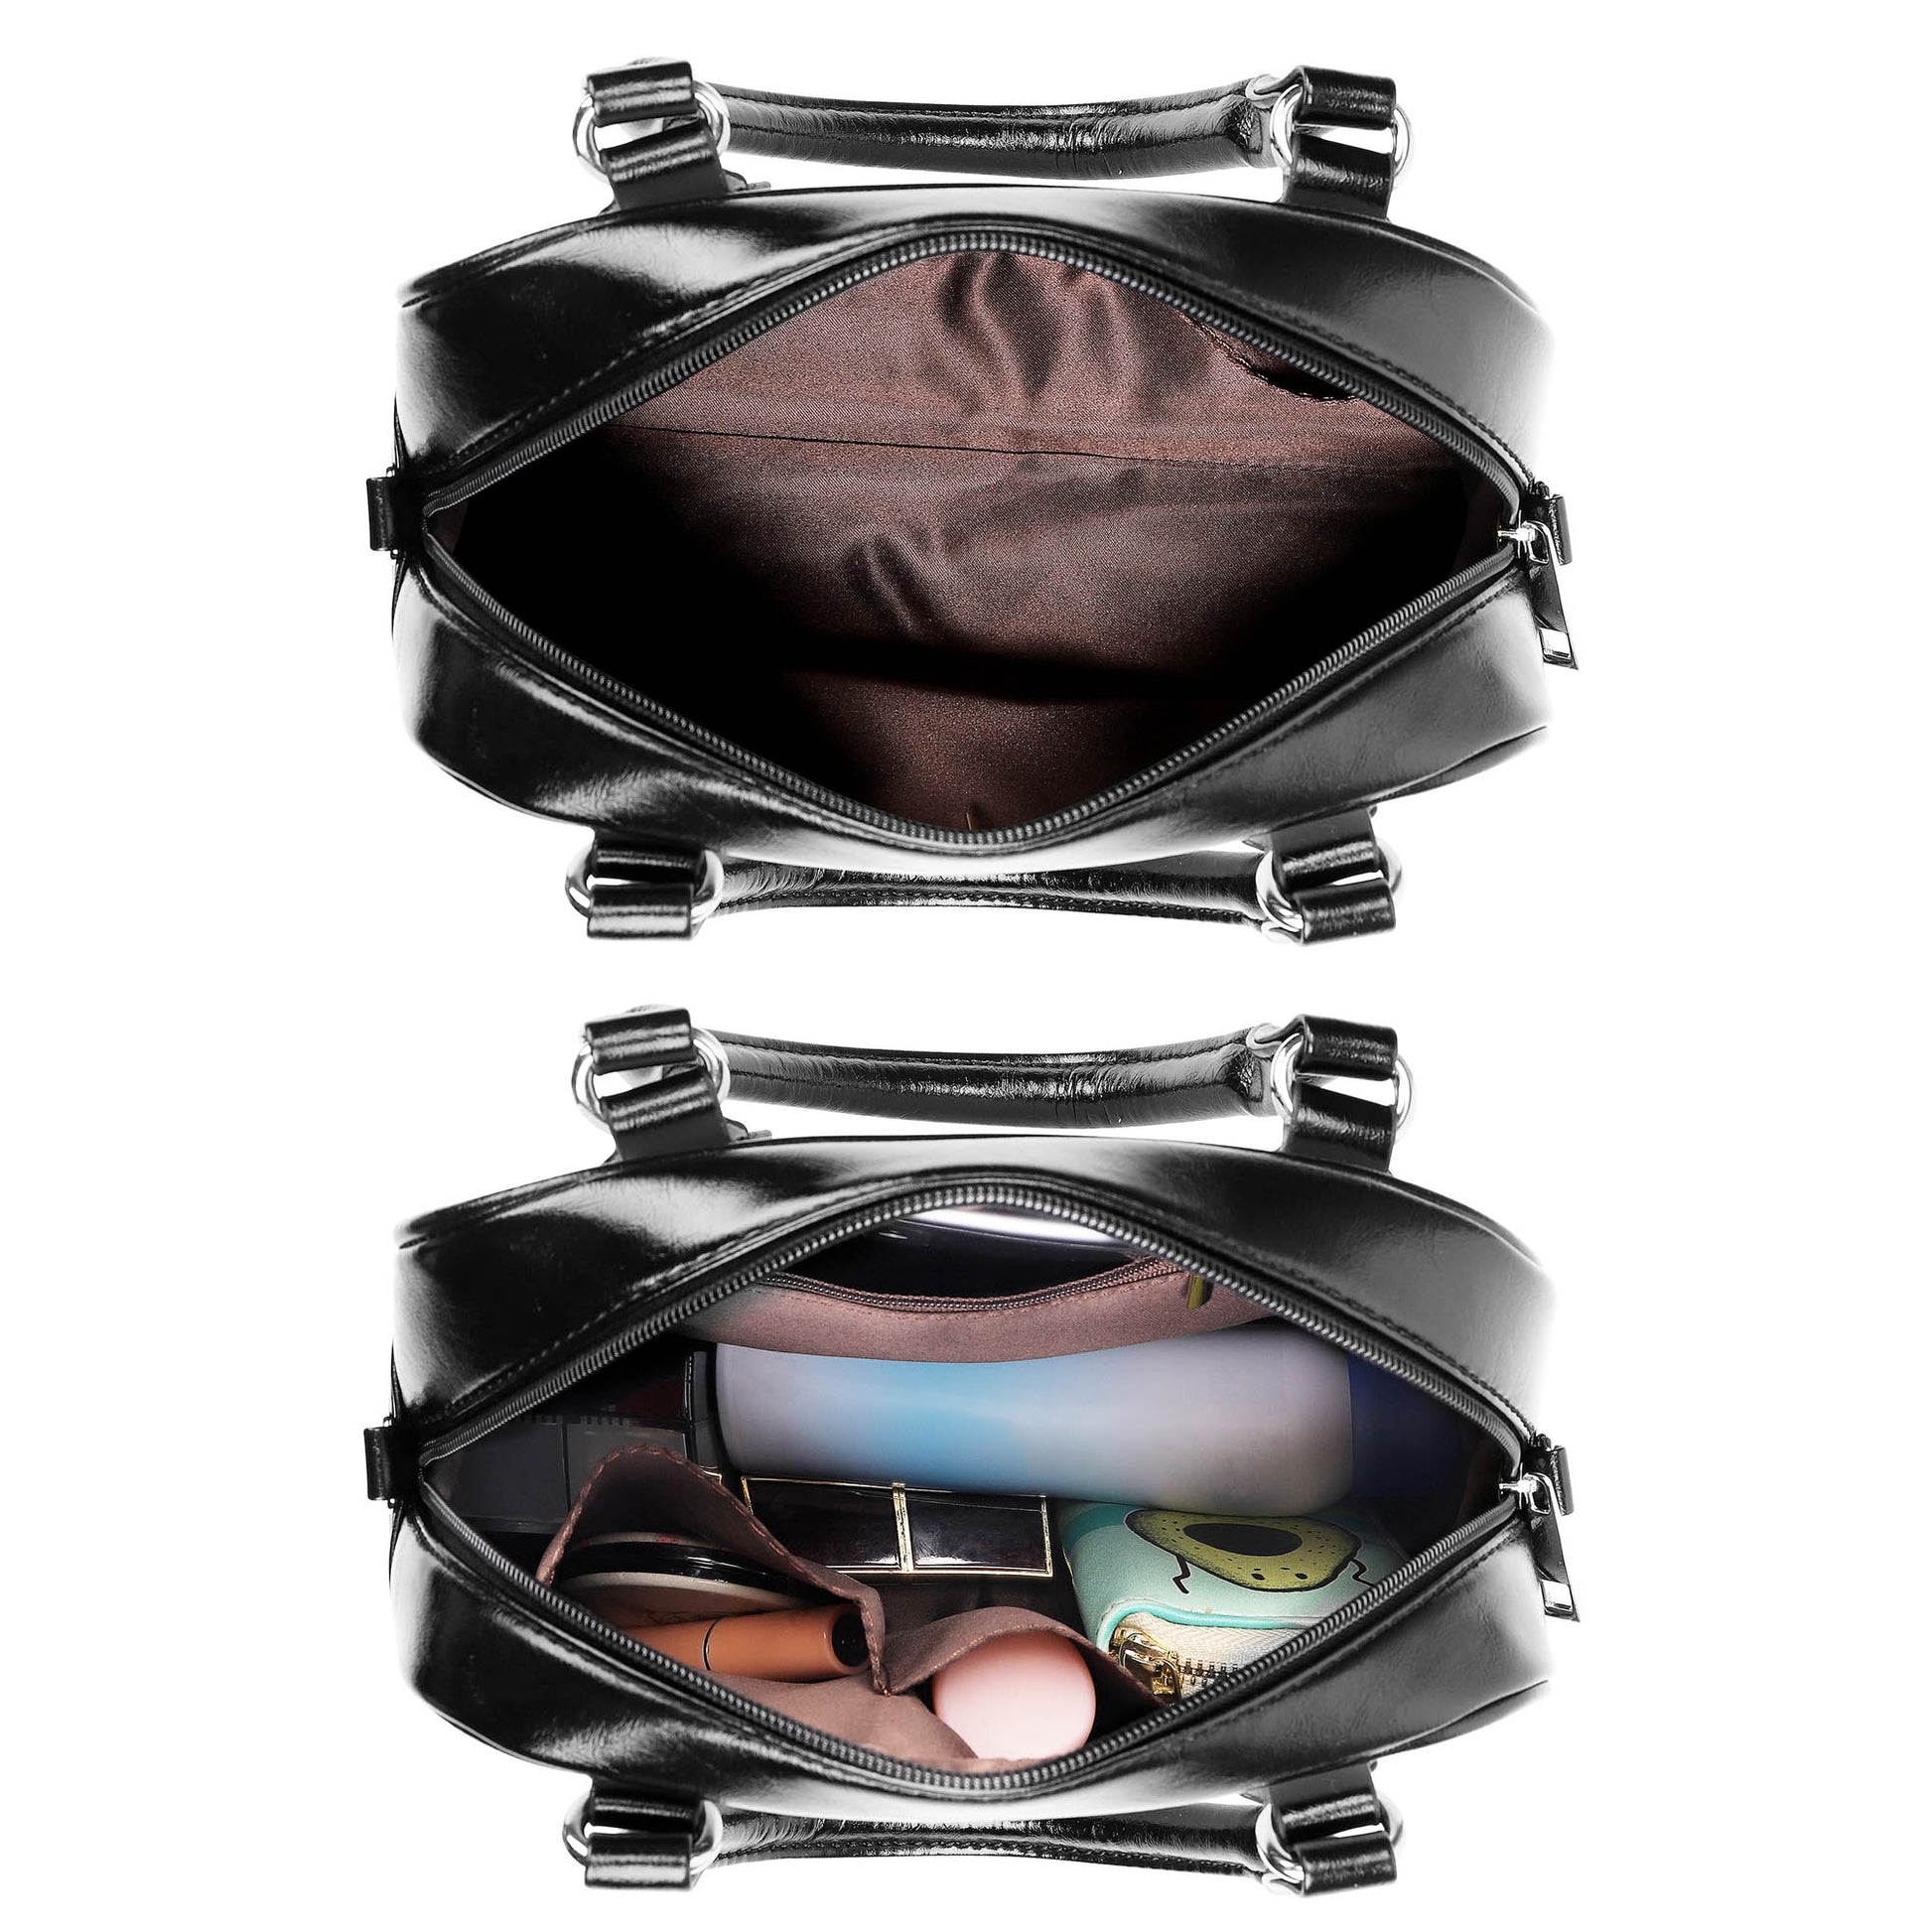 MacConnell Tartan Shoulder Handbags - Tartanvibesclothing